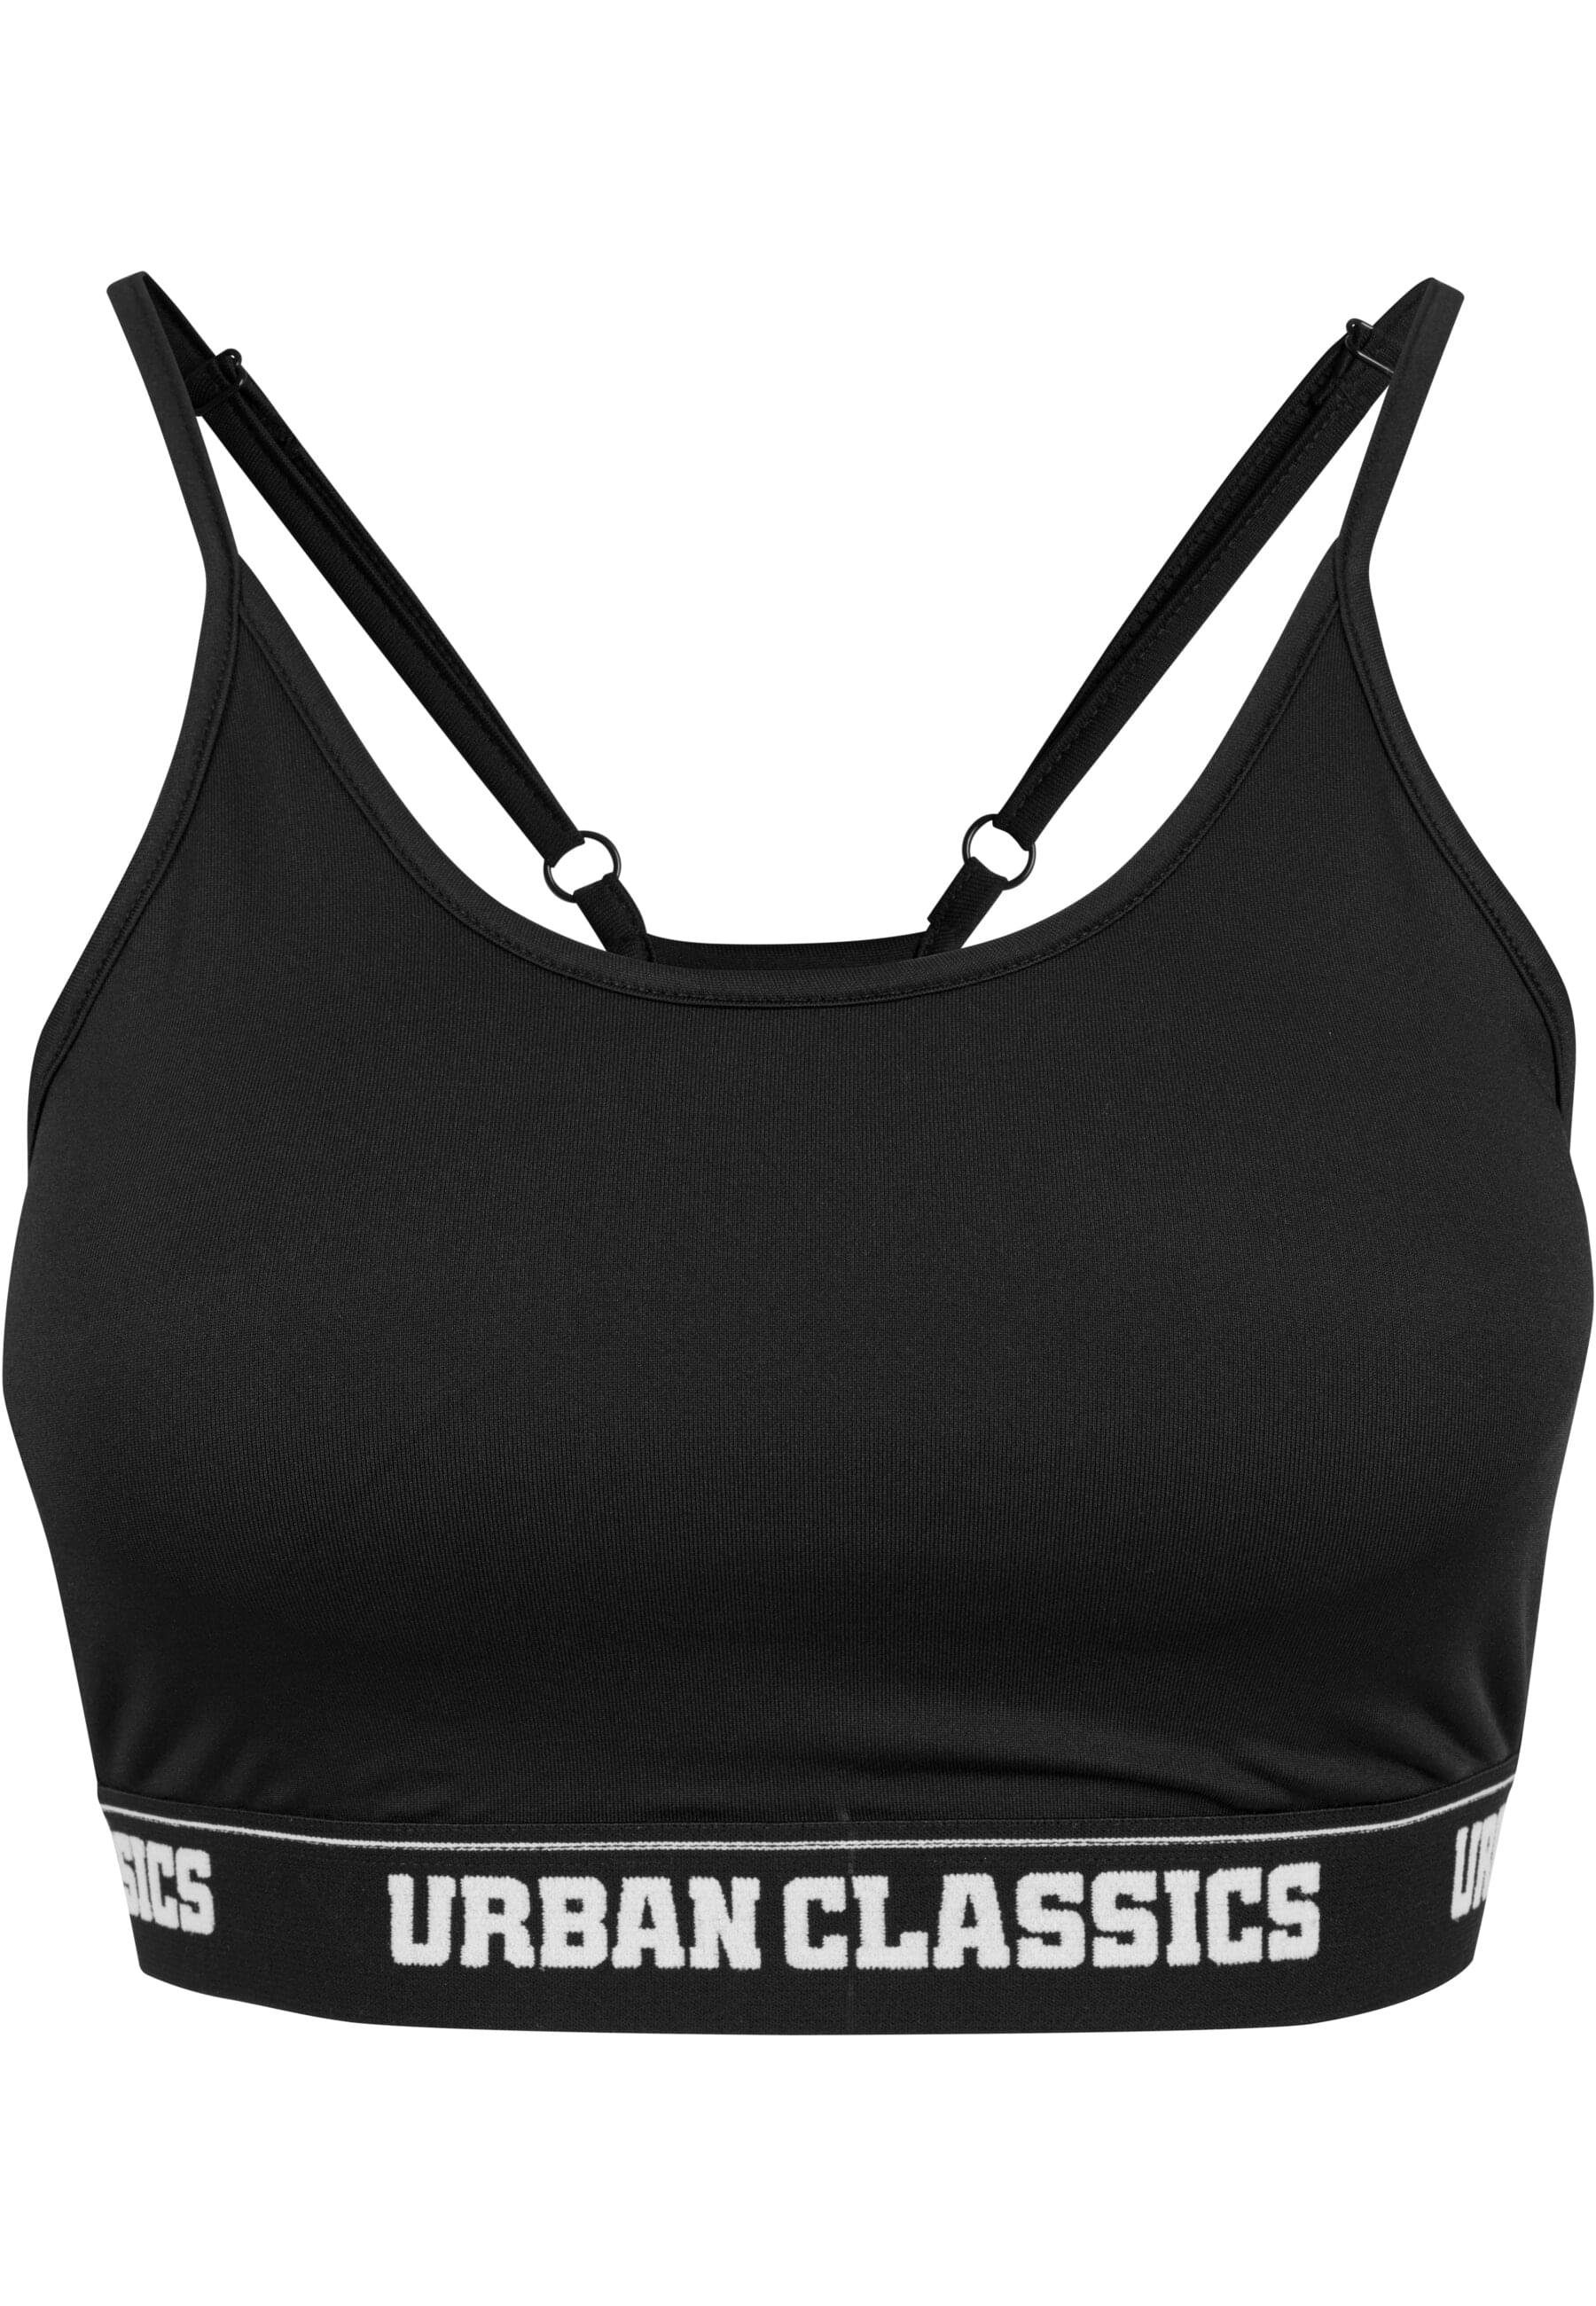 URBAN CLASSICS TB1659 black Ladies Sport-BH Sports Bra Damen Sports